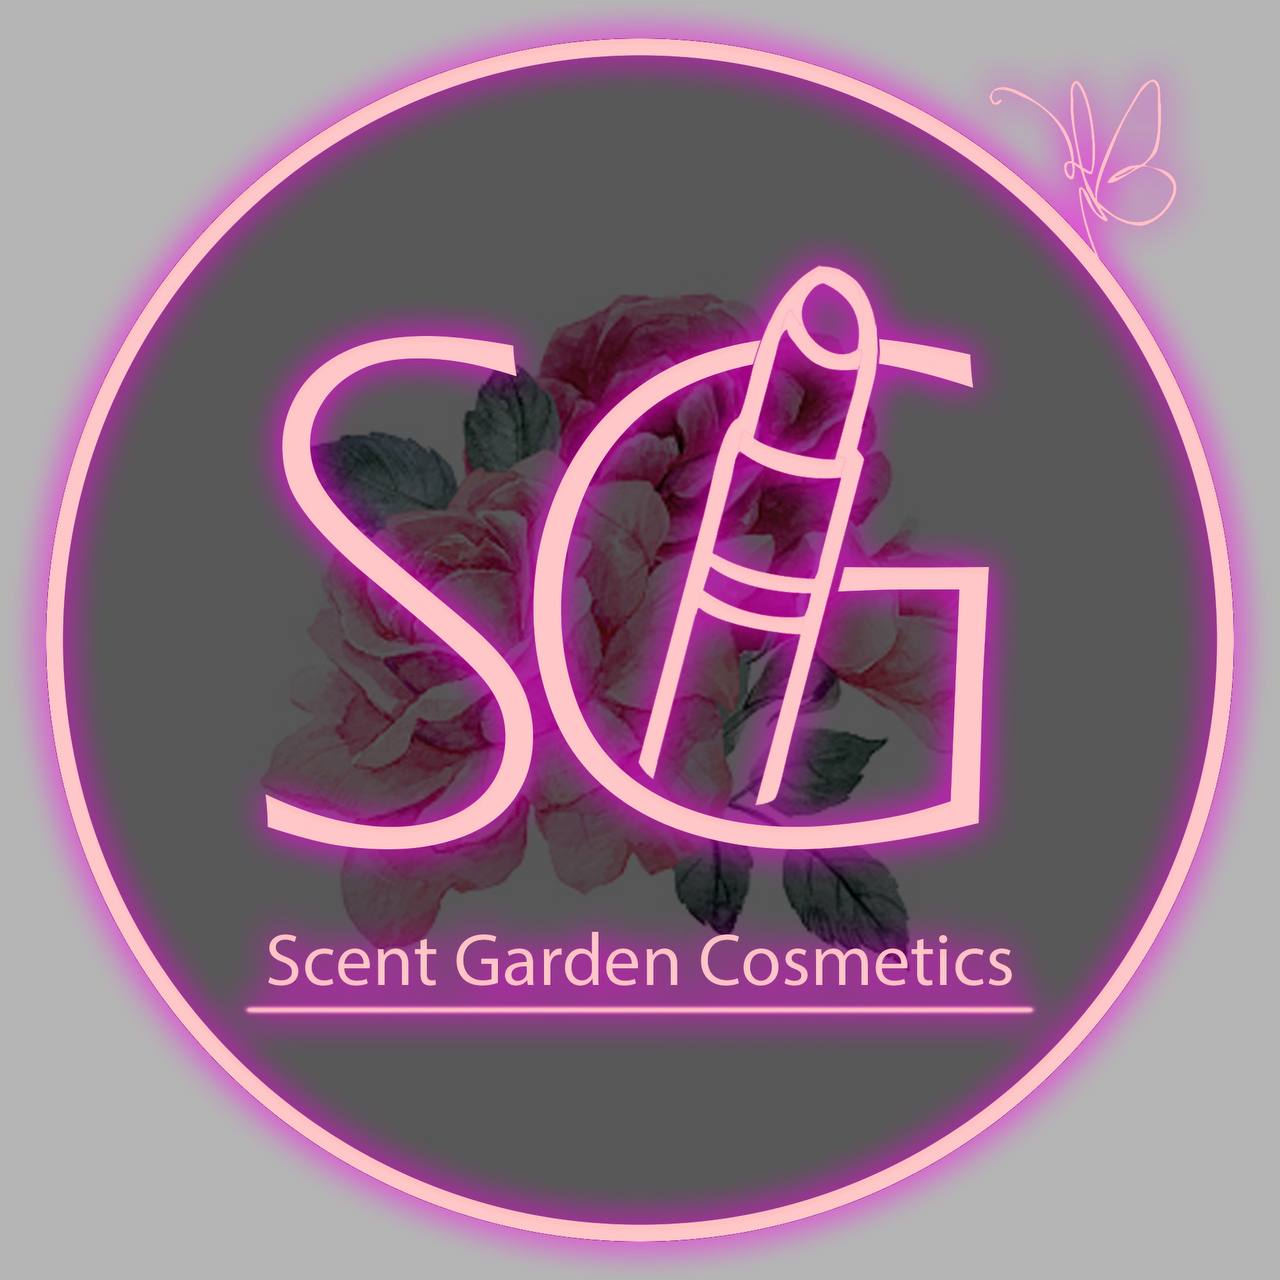 Scent Garden Cosmetics